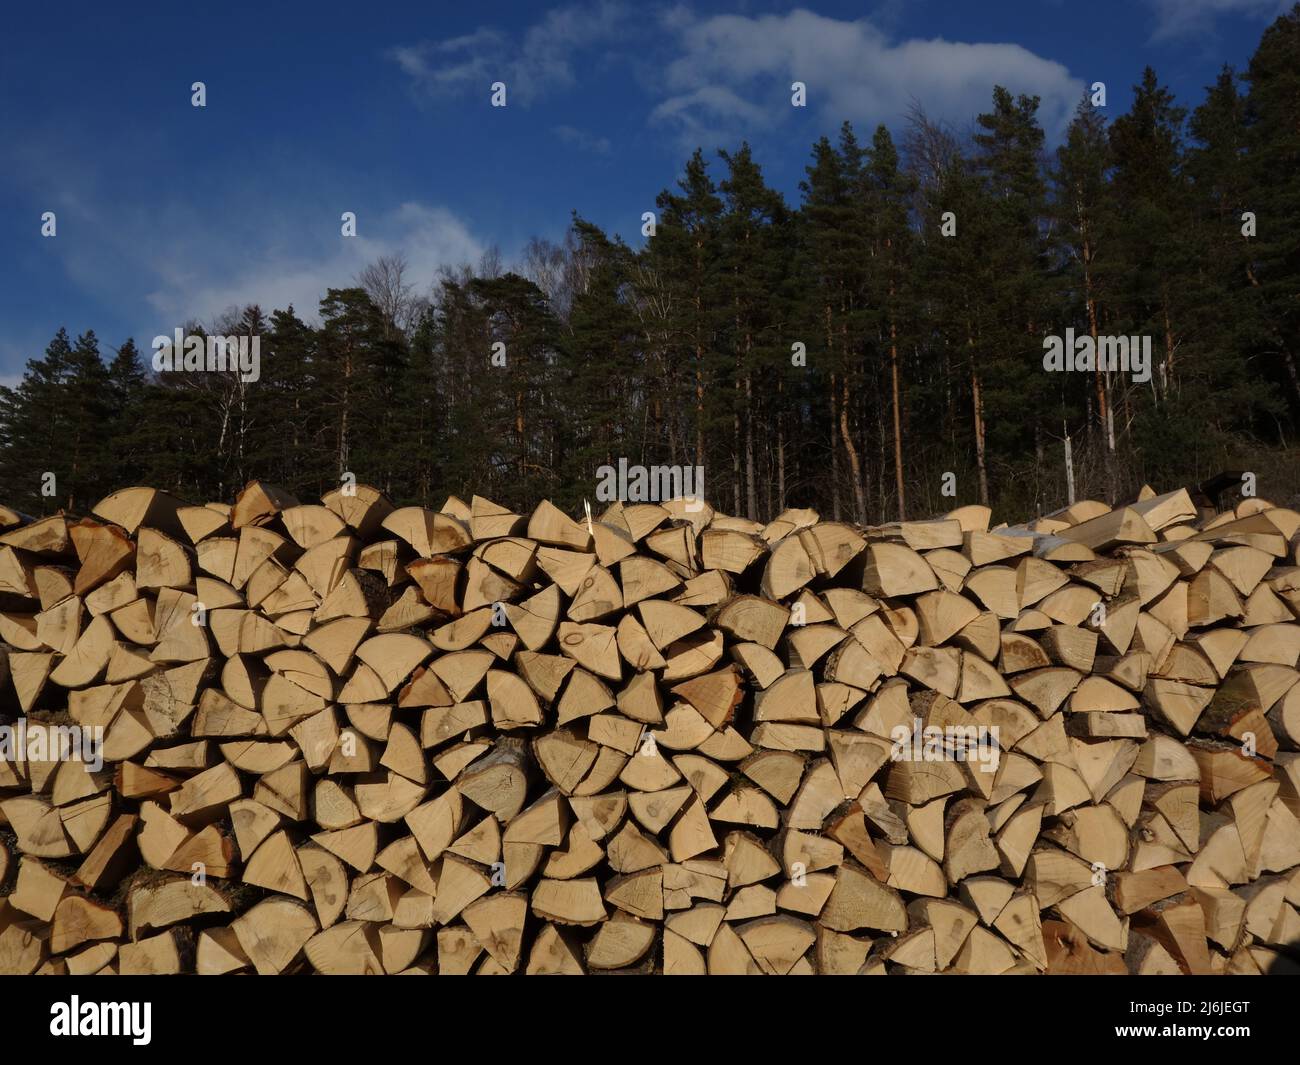 Quando l'inverno viene e con i prezzi costosi dell'elettricità, è probabilmente più sicuro avere una scorta di legna da ardere. Legna da ardere norvegese in pile. Foto Stock